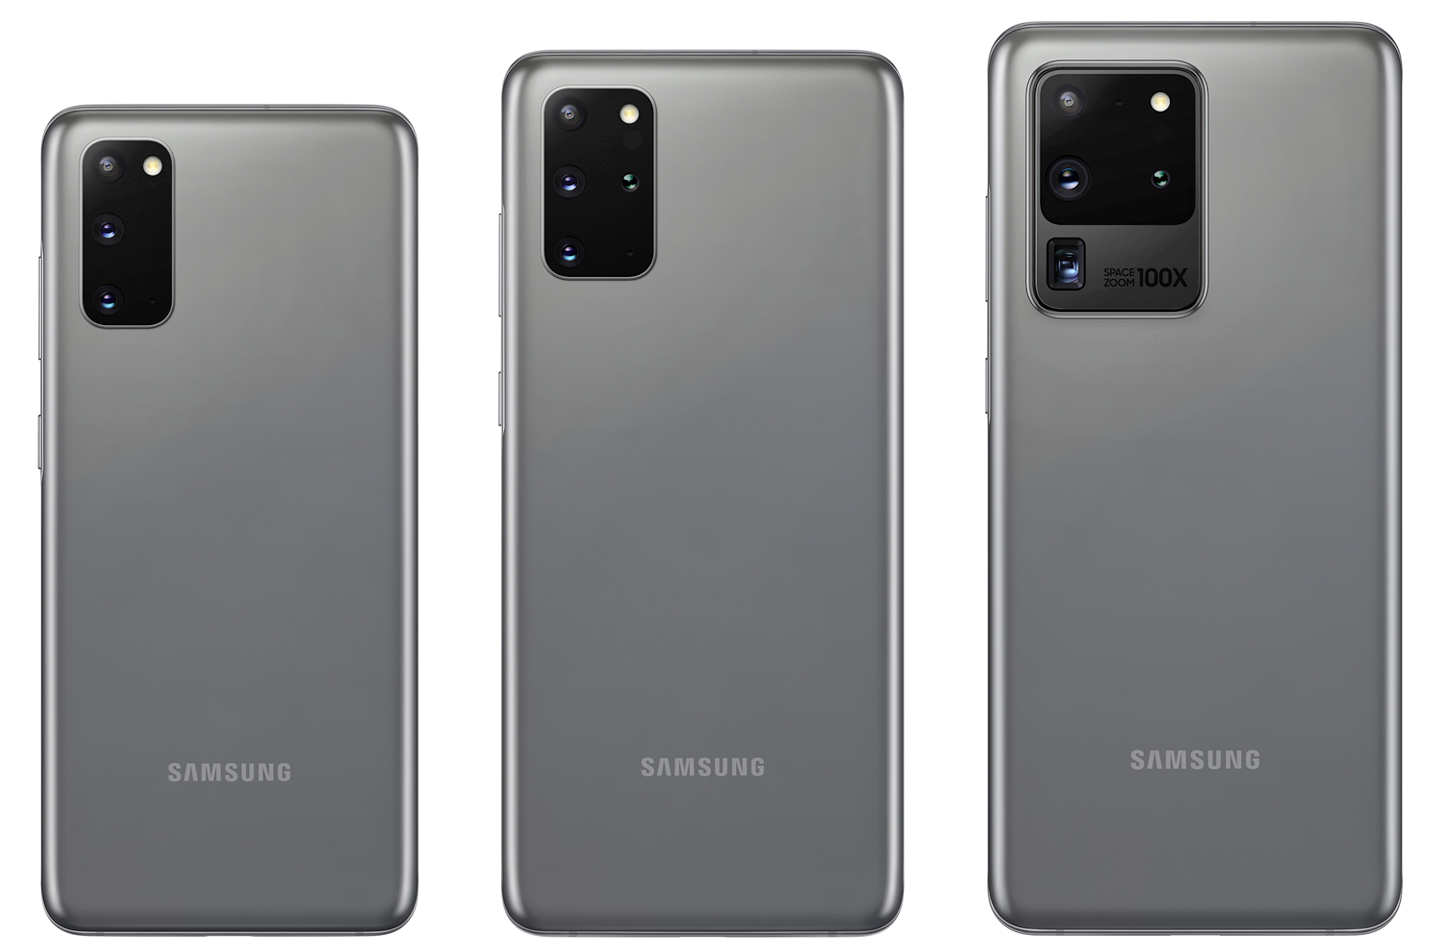 Samsung Galaxy S20, S20+ және S20 Ultra – жеке көзқарас. Адам сенгісіз 8К, 120HZ, 64/108MP…